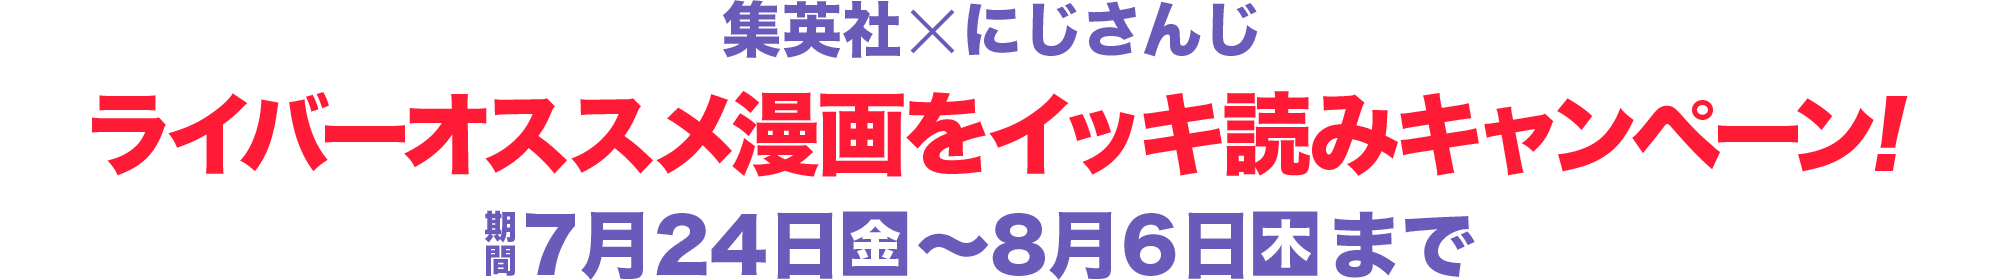 集英社xにじさんじ『ライバーオススメ漫画をイッキ読みキャンペーン!』